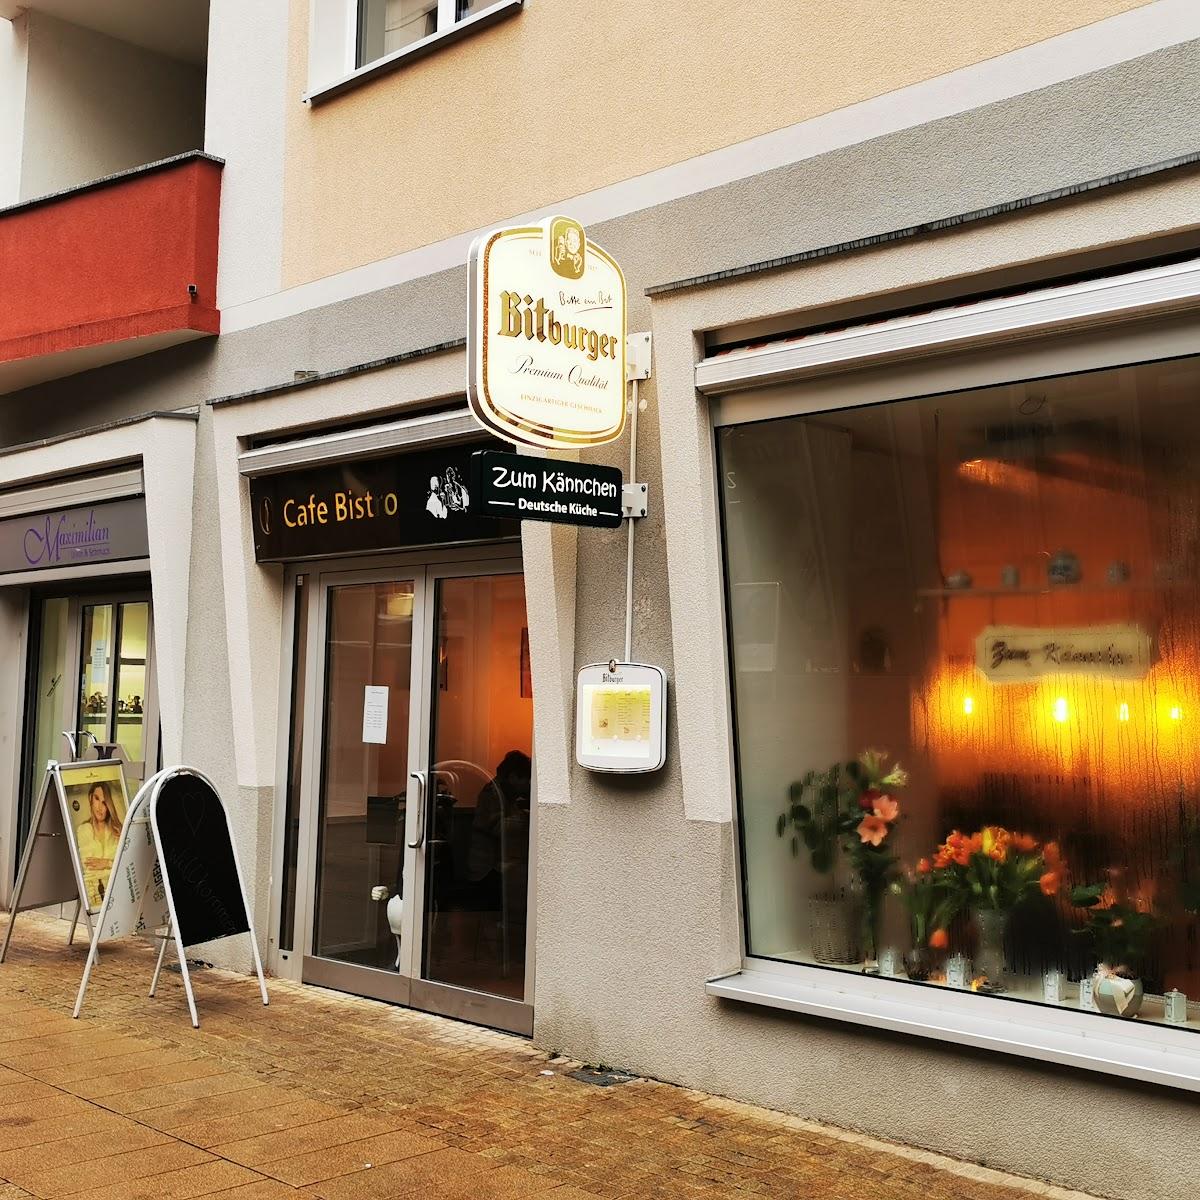 Restaurant "Zum Kännchen" in Halberstadt